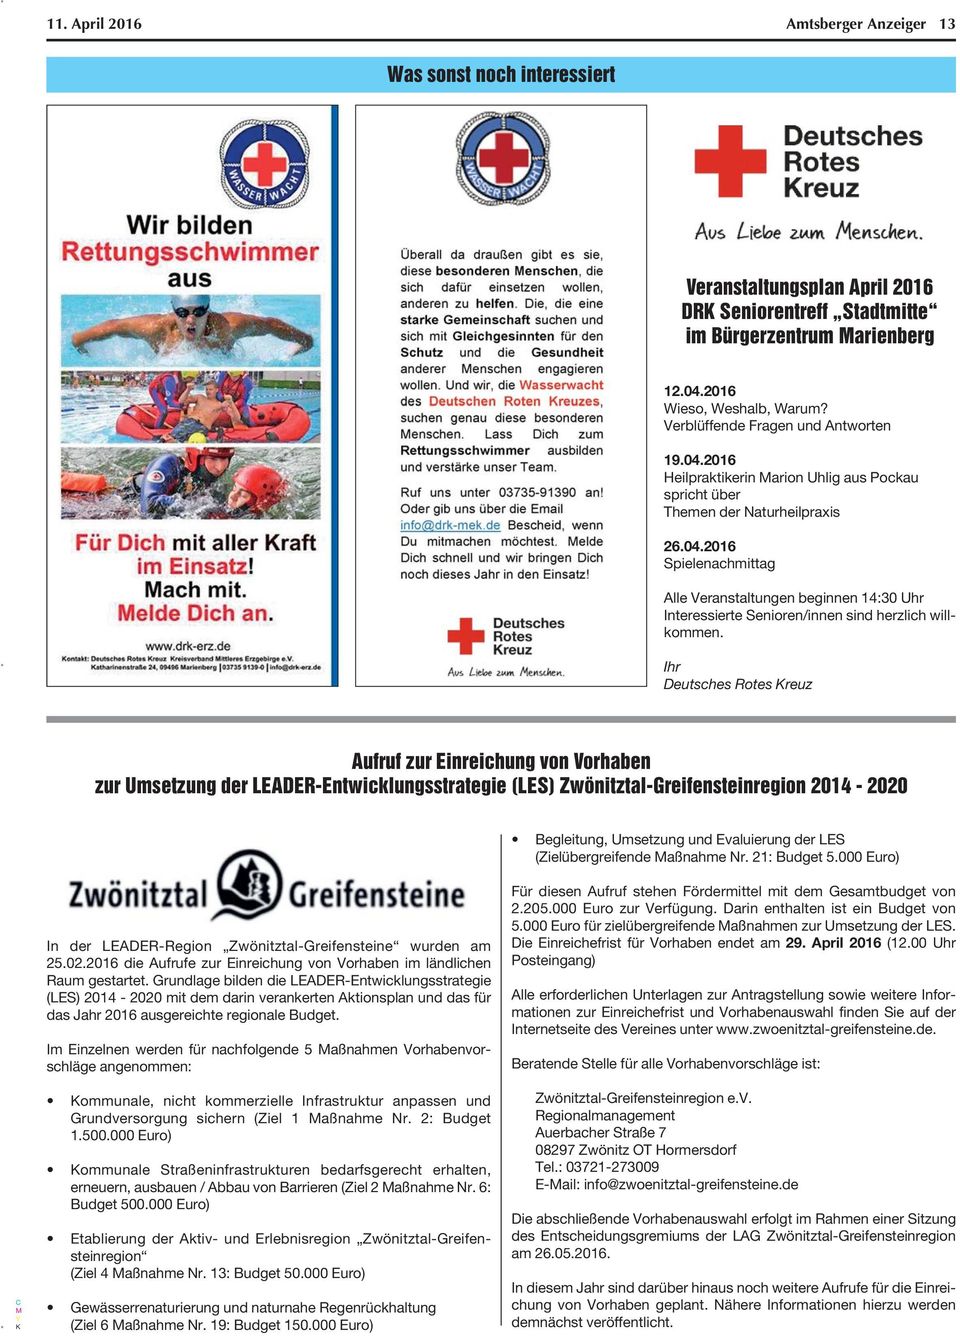 Ihr Deutsches Rotes reuz Aufruf zur Einreichung von Vorhaben zur Umsetzung der LEADER-Entwicklungsstrategie (LES) Zwönitztal-Greifensteinregion 2014-2020 Begleitung, Umsetzung und Evaluierung der LES